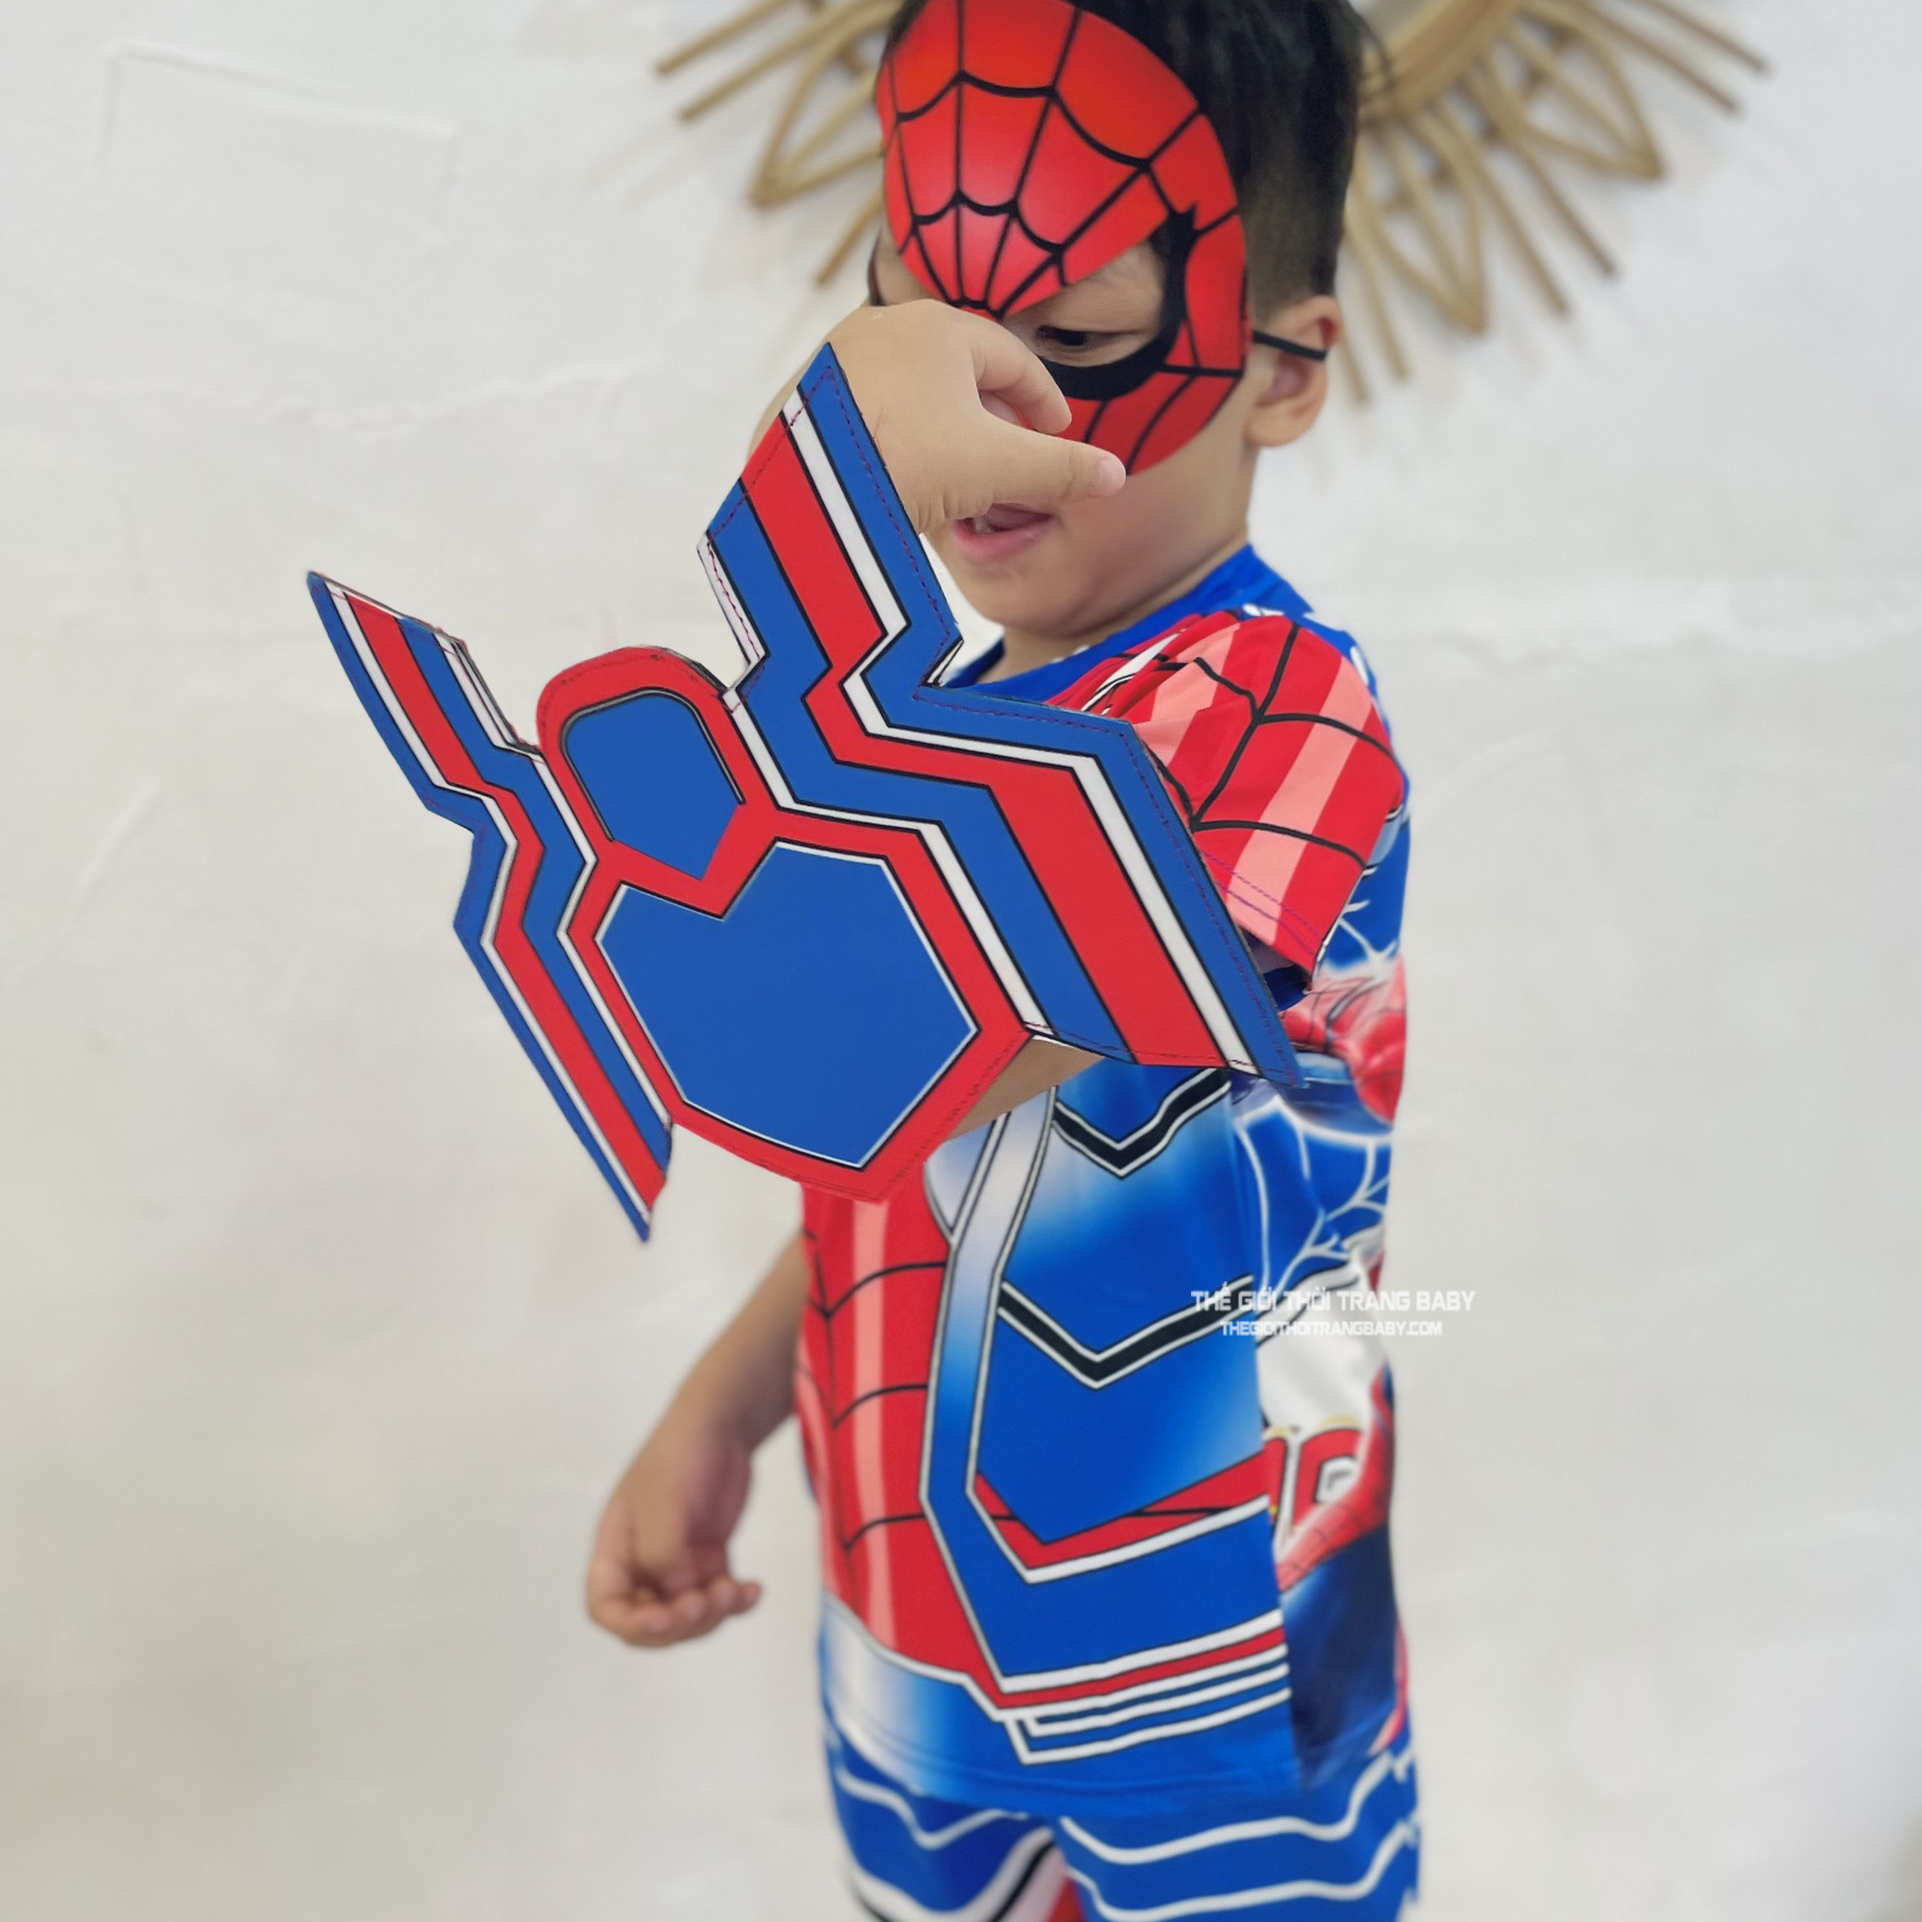 Bộ quần áo siêu nhân bé trai samkids mẫu mới 2022 kèm khiên và mặt nạ